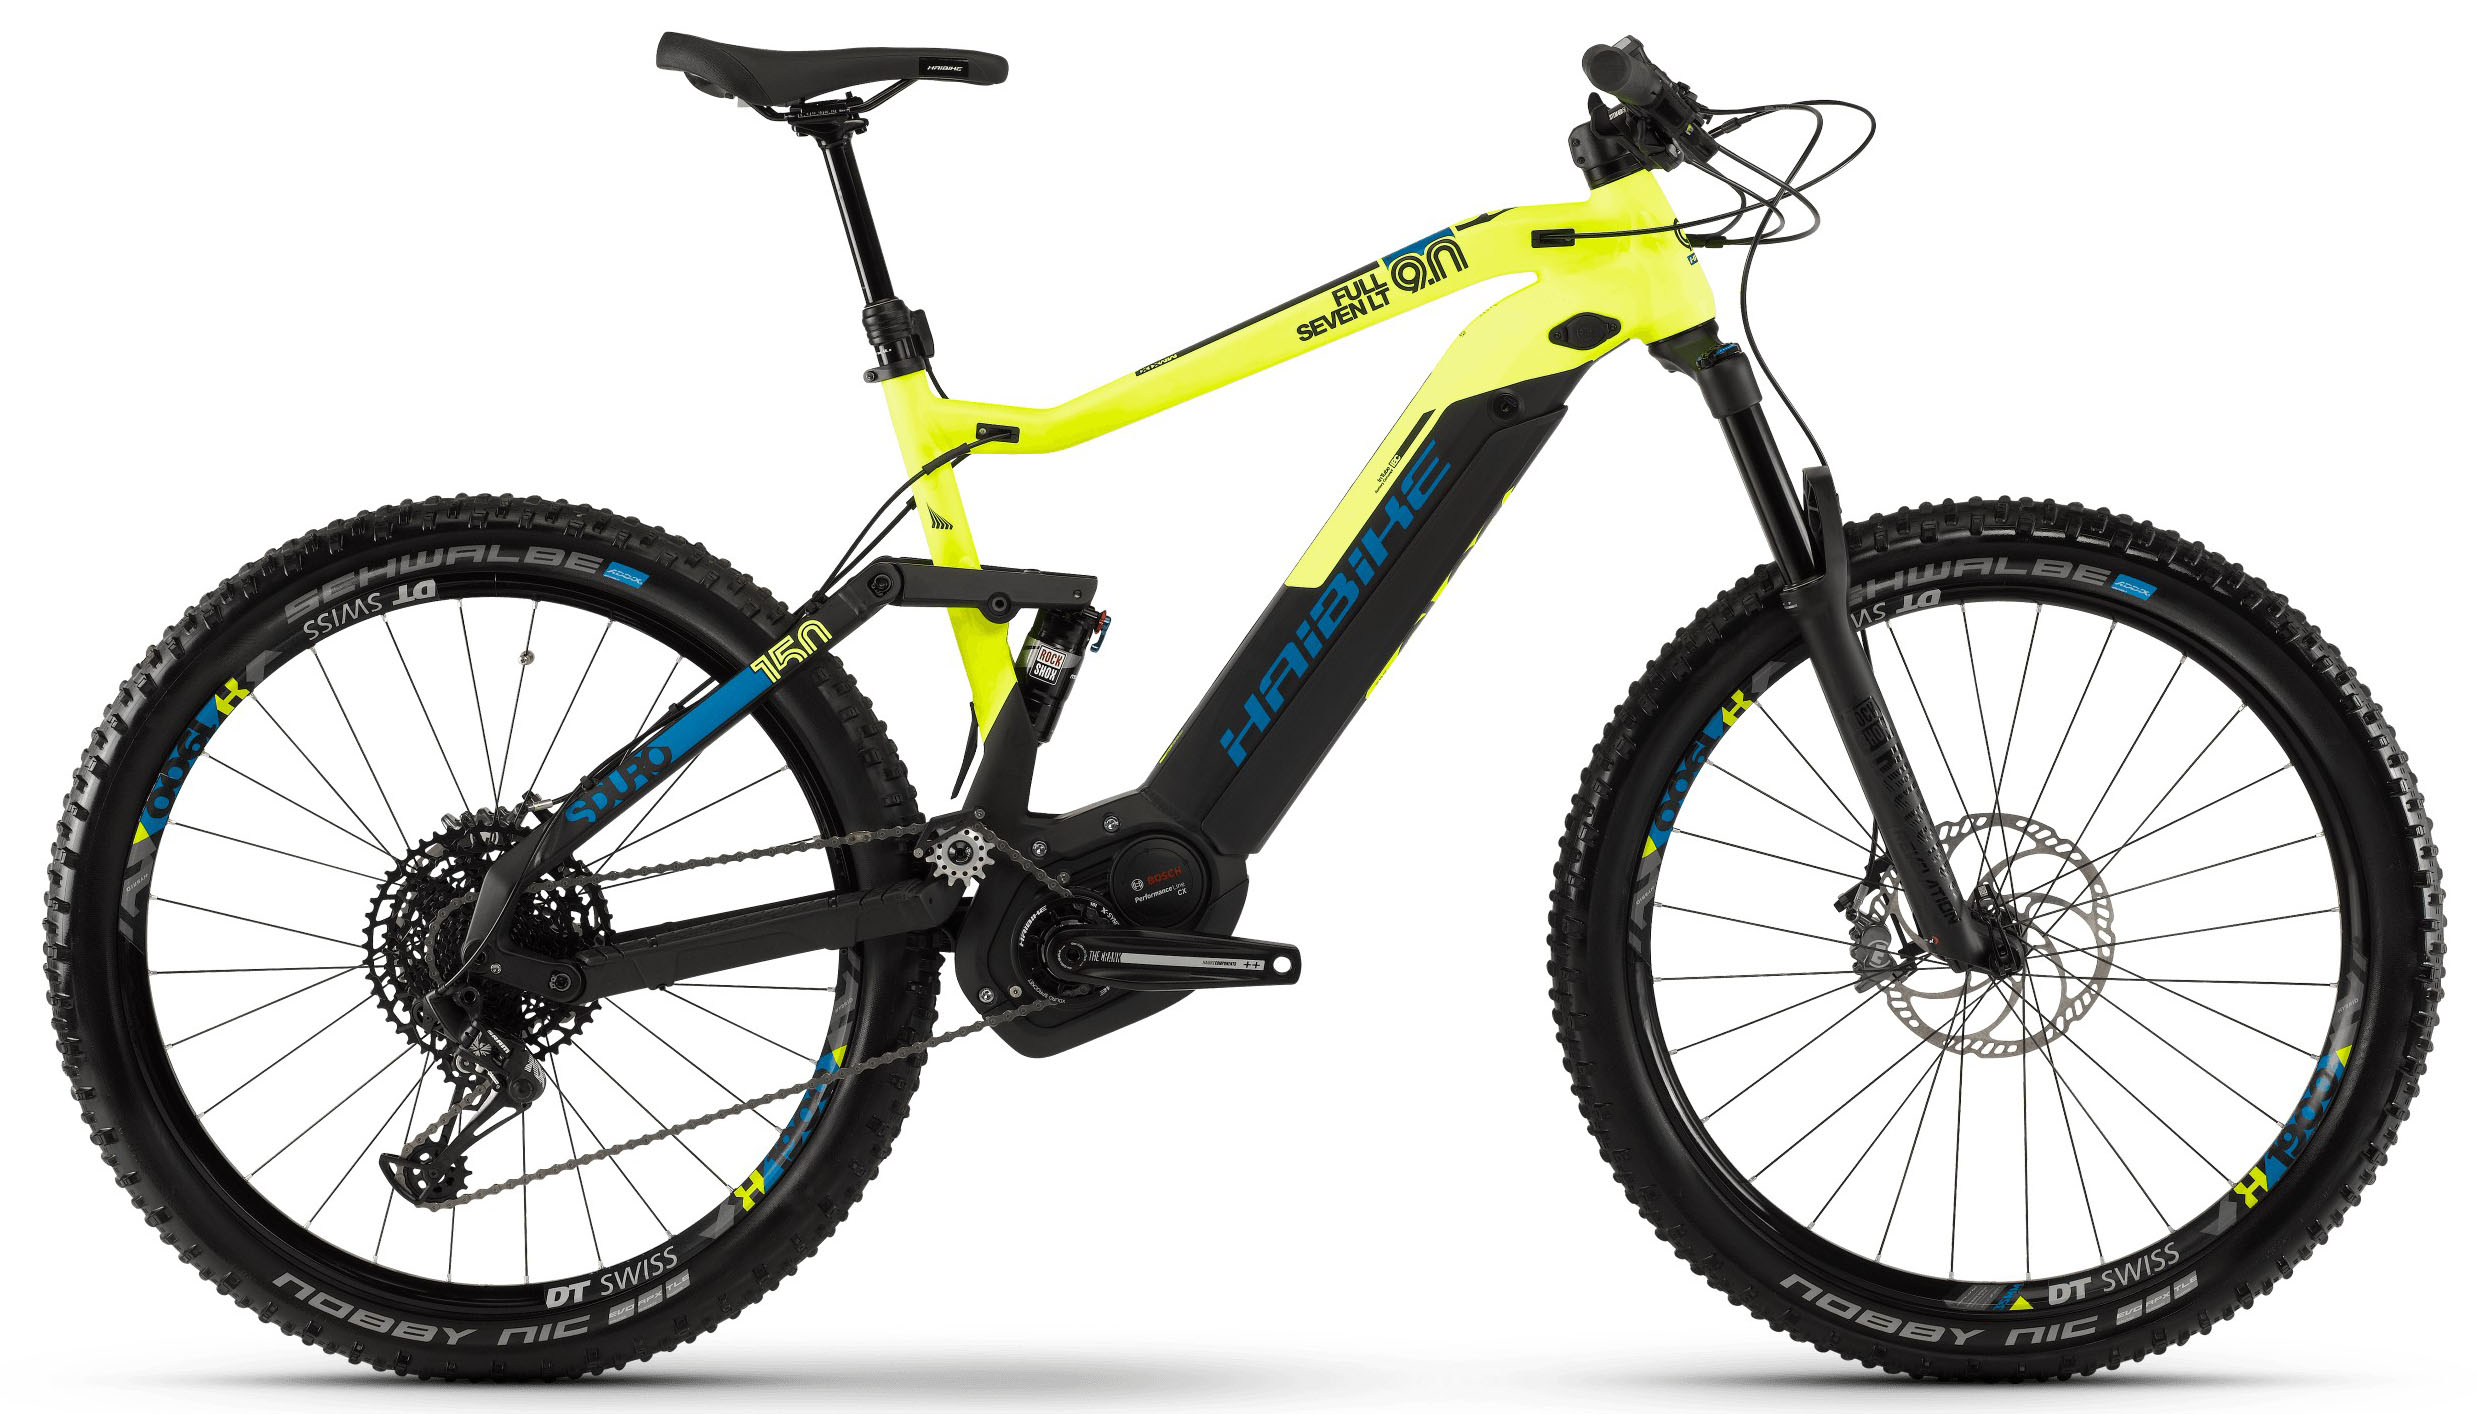  Велосипед Haibike SDURO FullSeven LT 9.0 i500Wh 12-G NX 2019